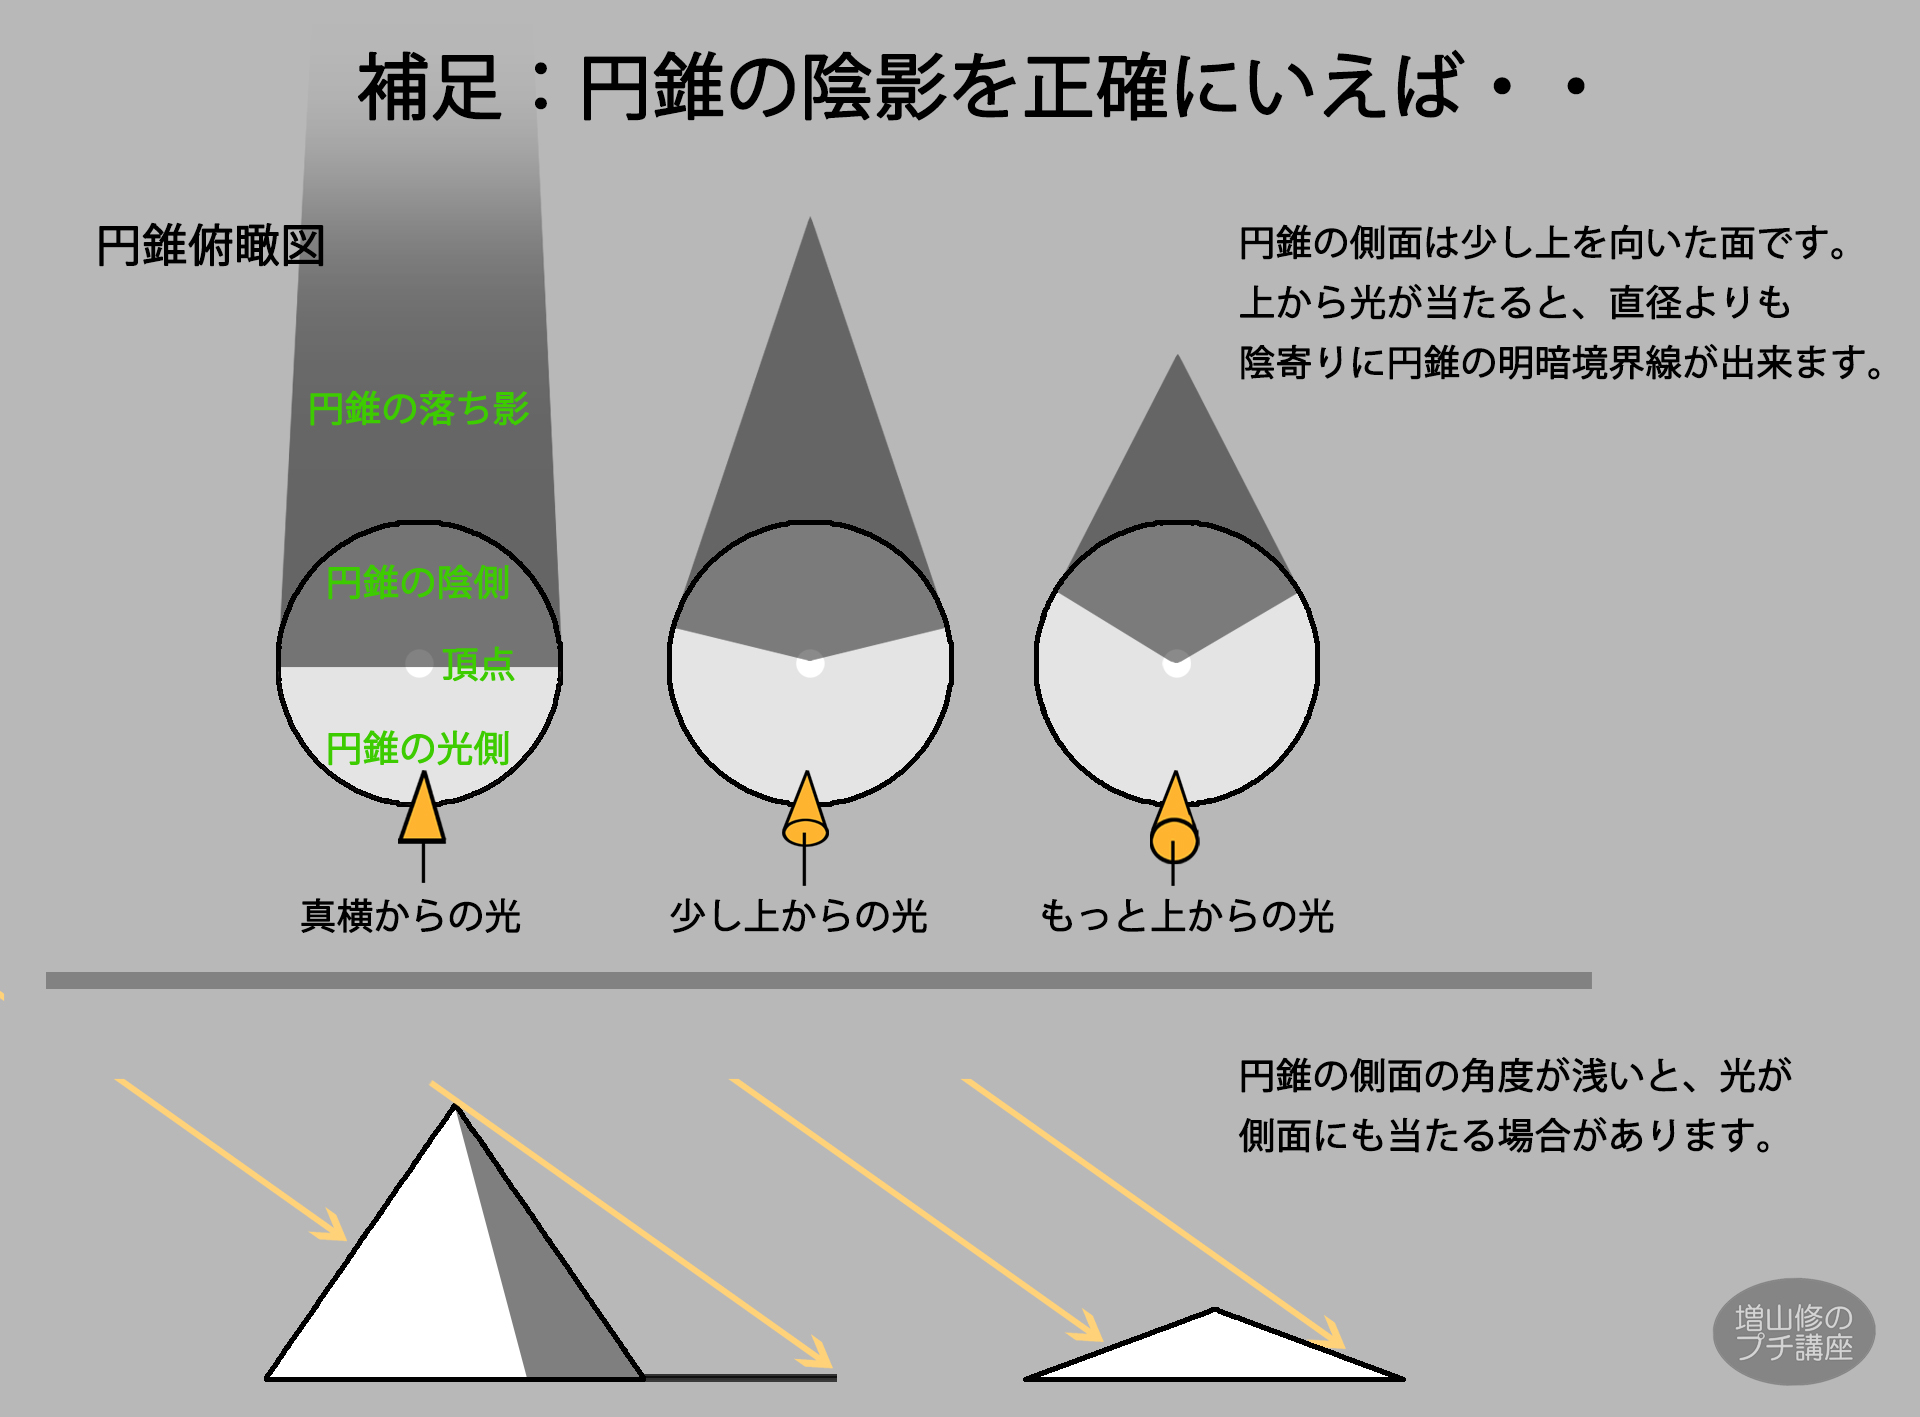 増山修 インスパイアード Masuyama Osamu Inspired Inc 円錐の陰影の付け方 側面が円柱と違い斜めなので 太陽光が当たりやすくなります そのため正確には底円直径より陰寄りに明暗境界線が出来ます しかし絵的な印象では光と影の面積比のほうが